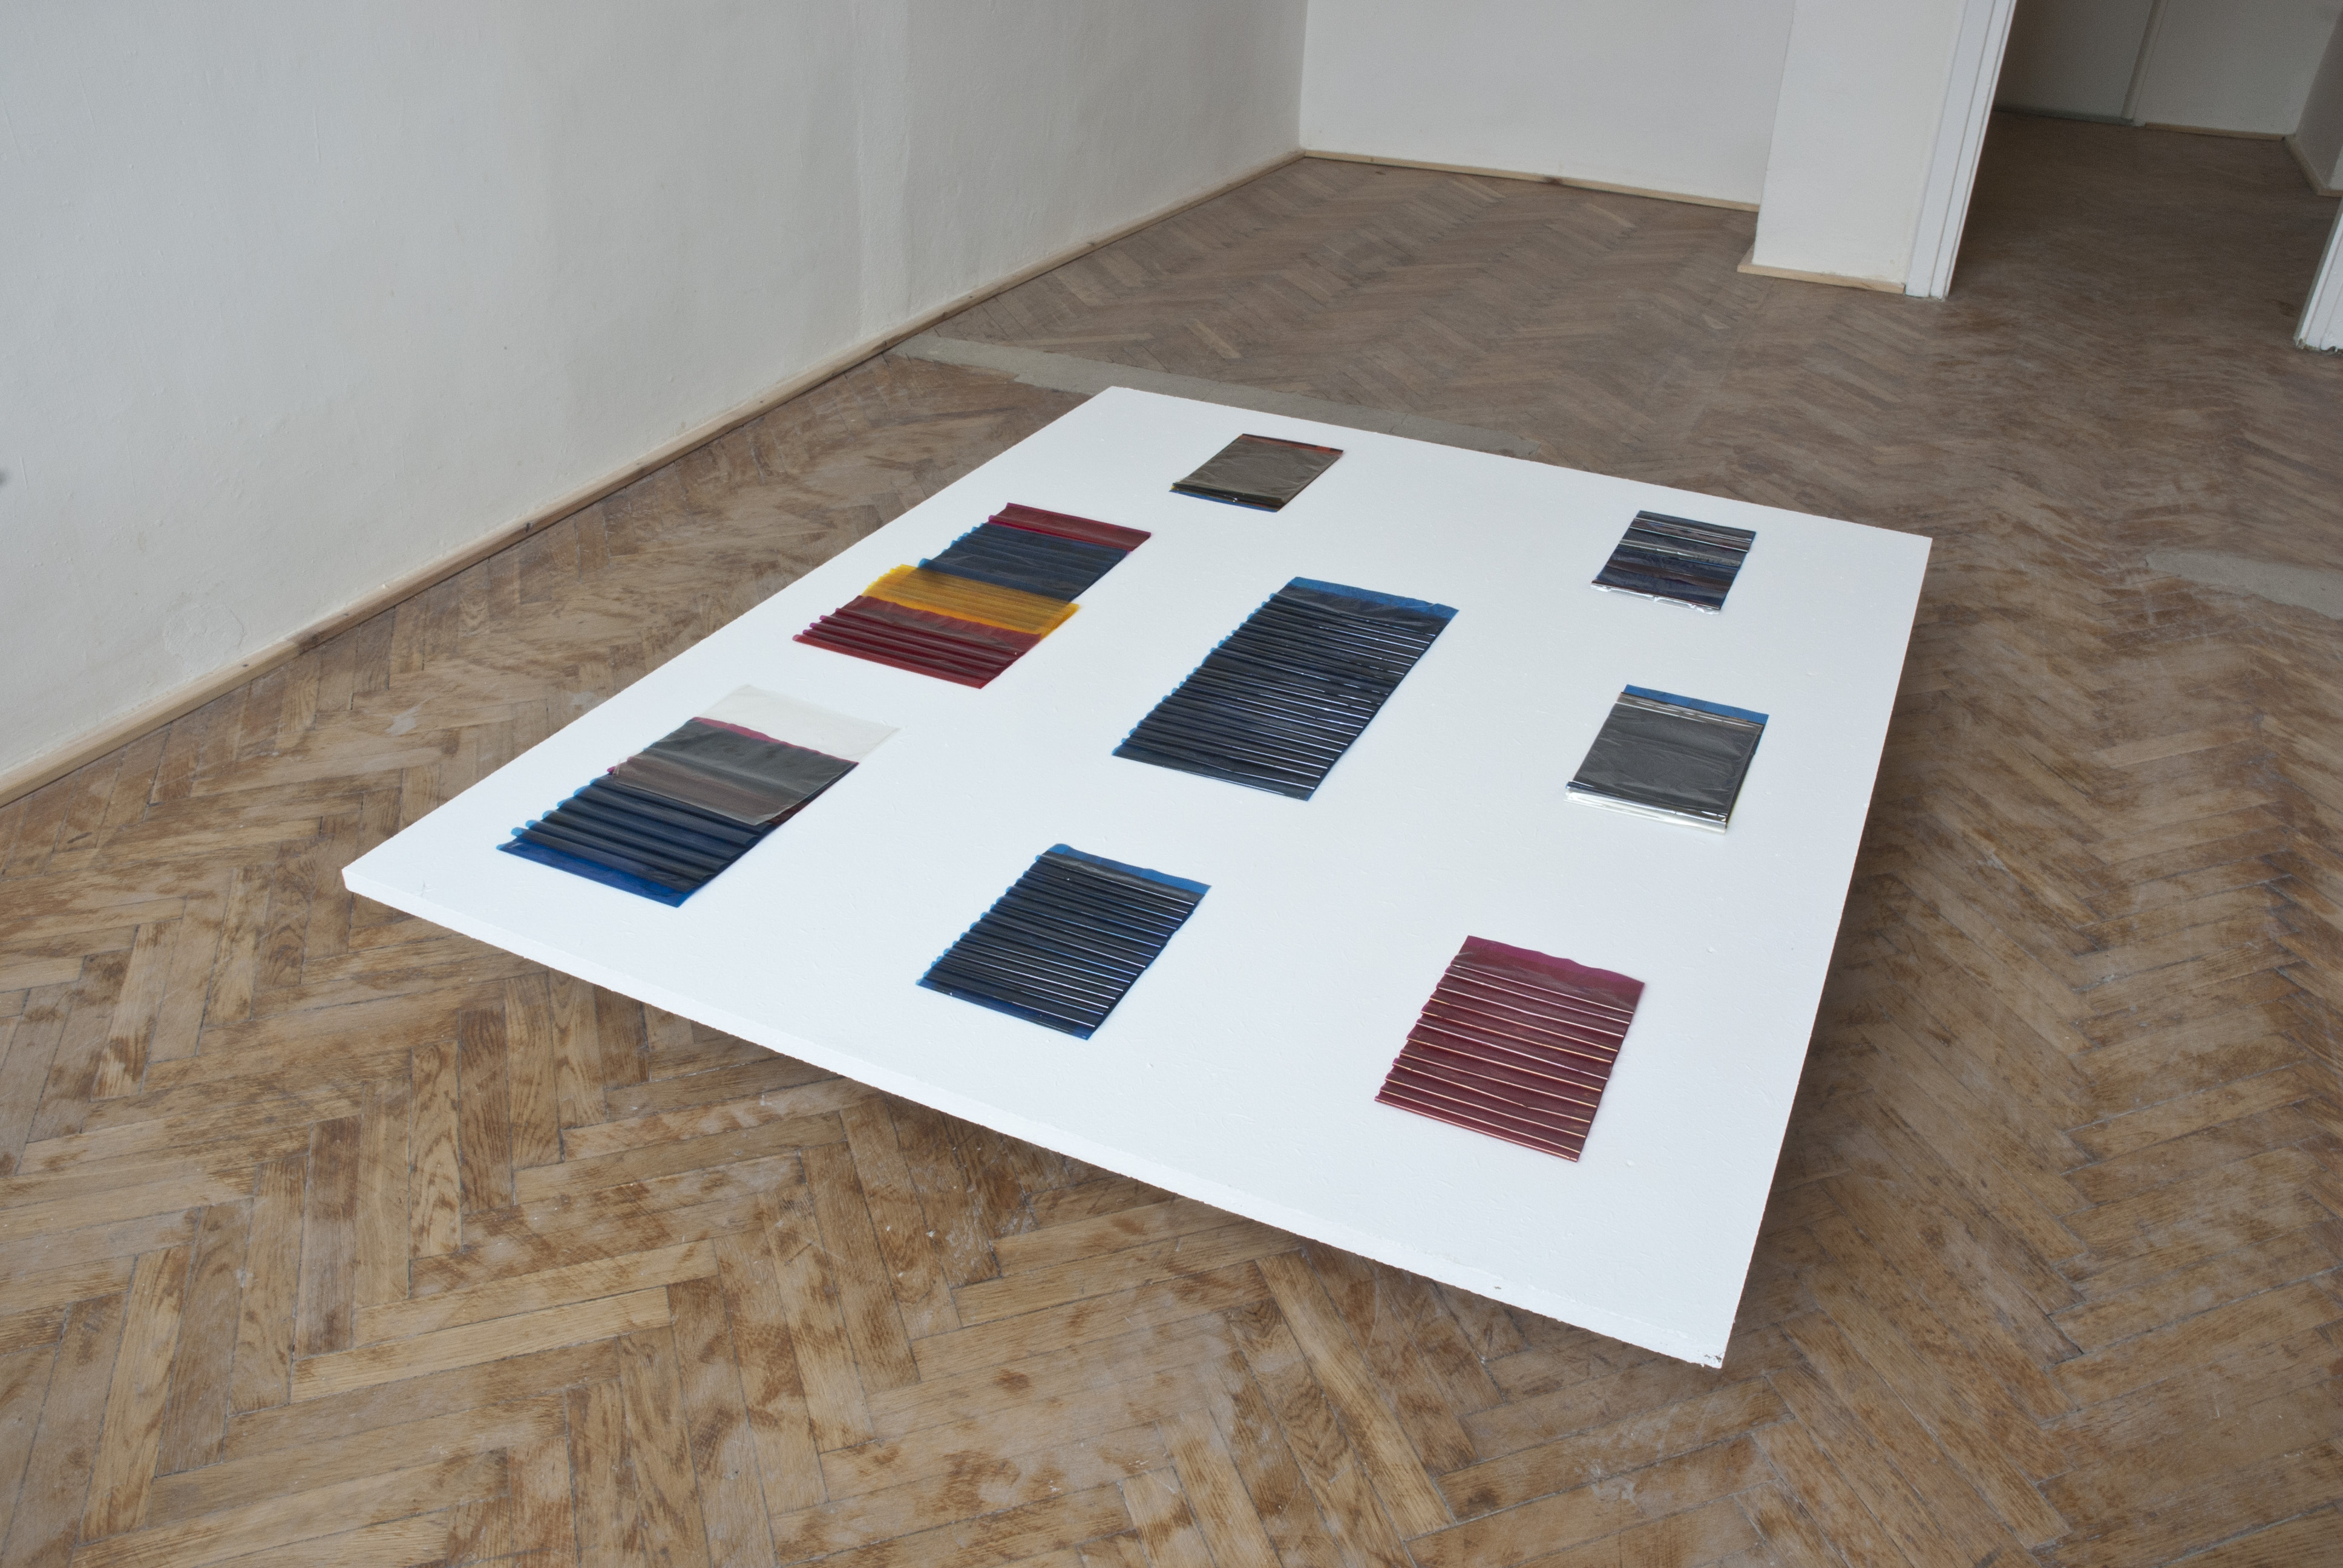 Tomasz Saciłowski, obiekty z folii taśm drukarek termosublimacyjnych, 2015, ekspozycja na wystawie D2T2 w galerii Piktogram